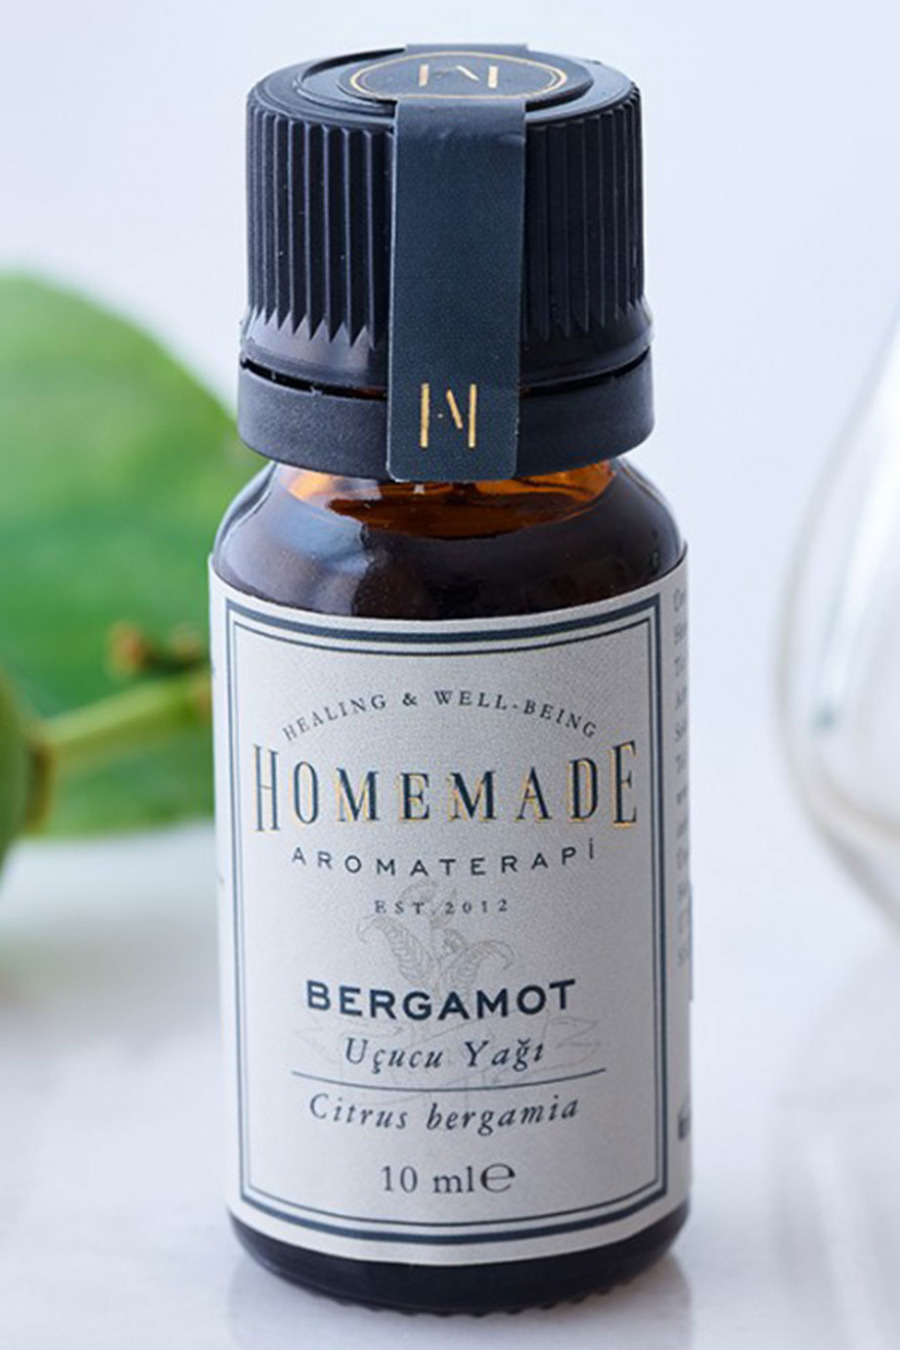 Homemade Aromaterapi, Bergamot Uçucu Yağı